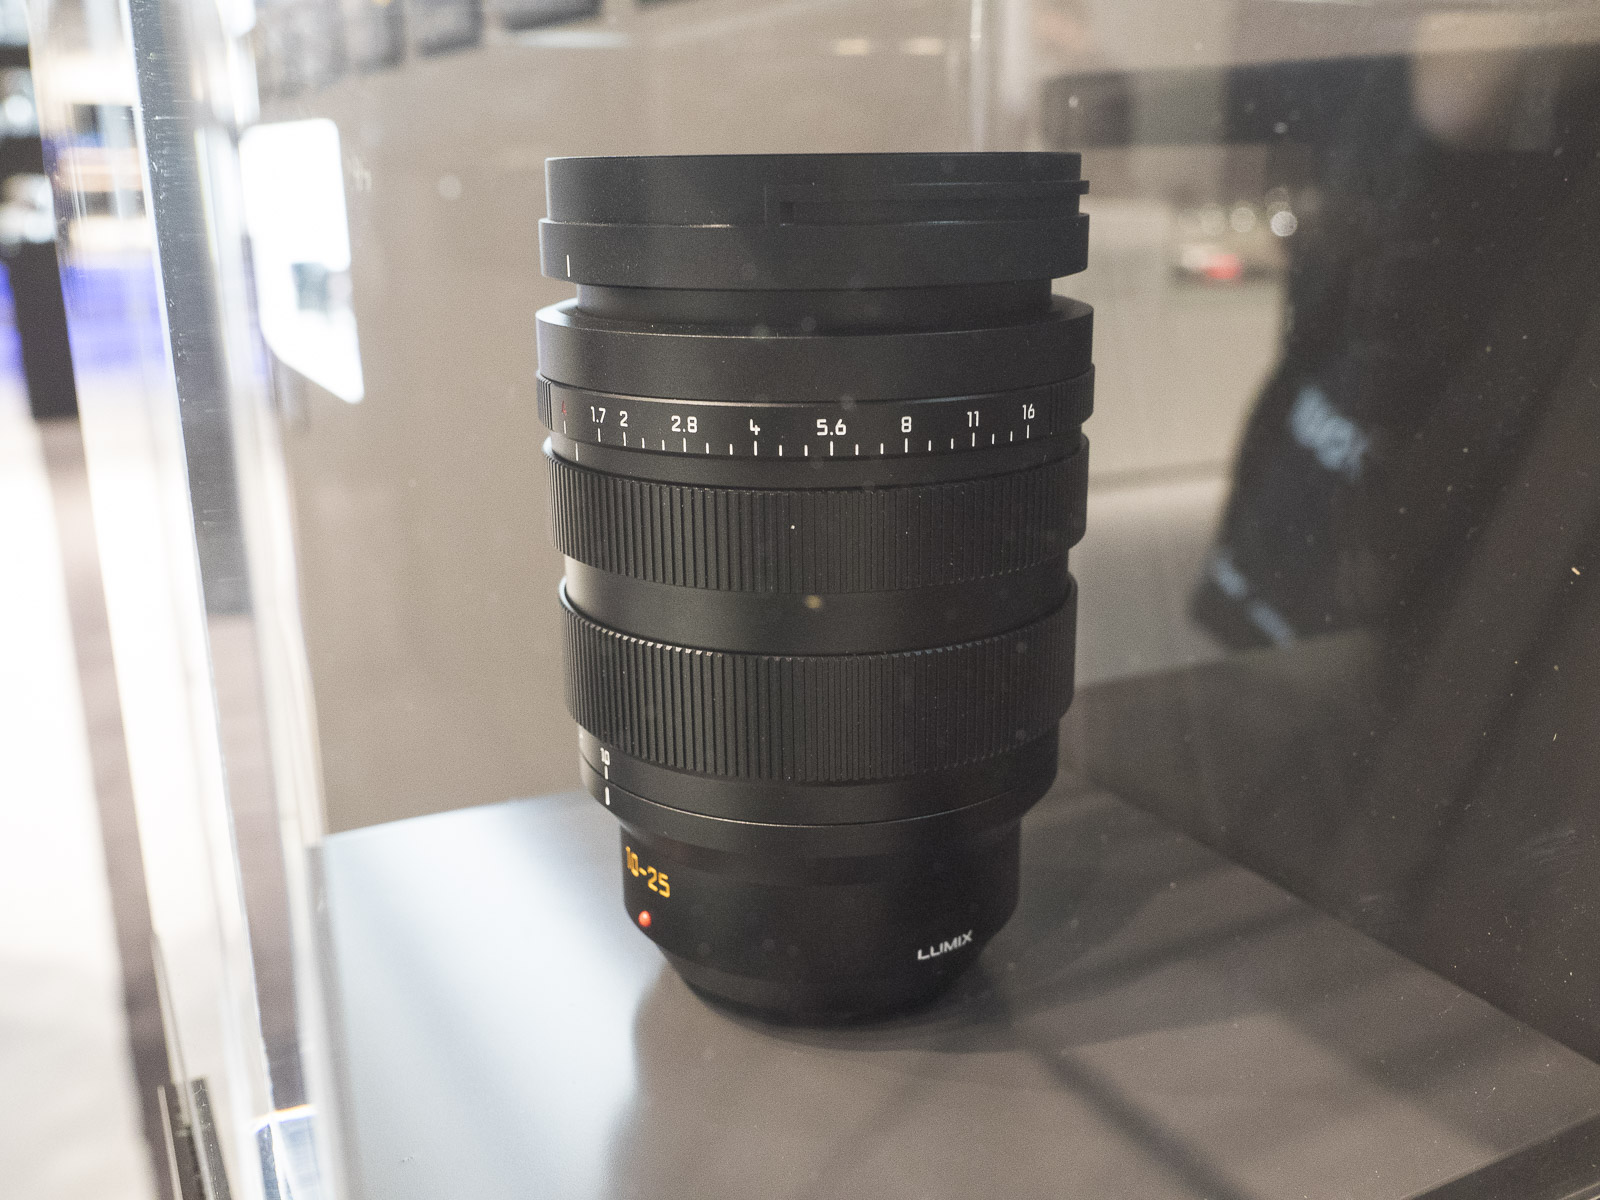 Panasonic Leica DG Vario-Summilux 10-25 mm f/1.7 MFT lens announced (future  development) - Photo Rumors